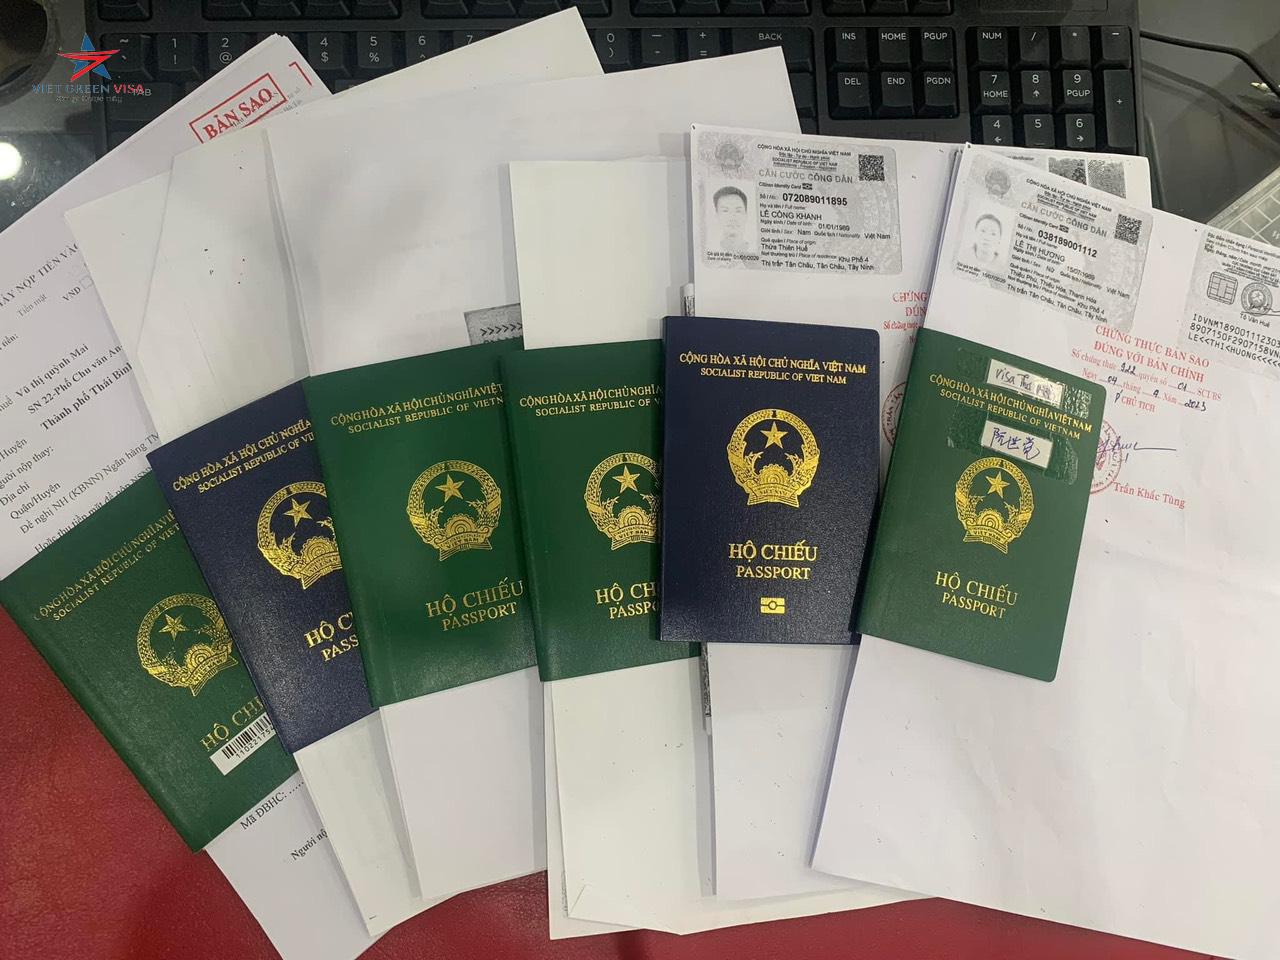 Dịch vụ làm hộ chiếu nhanh tại Lai Châu nhanh chóng